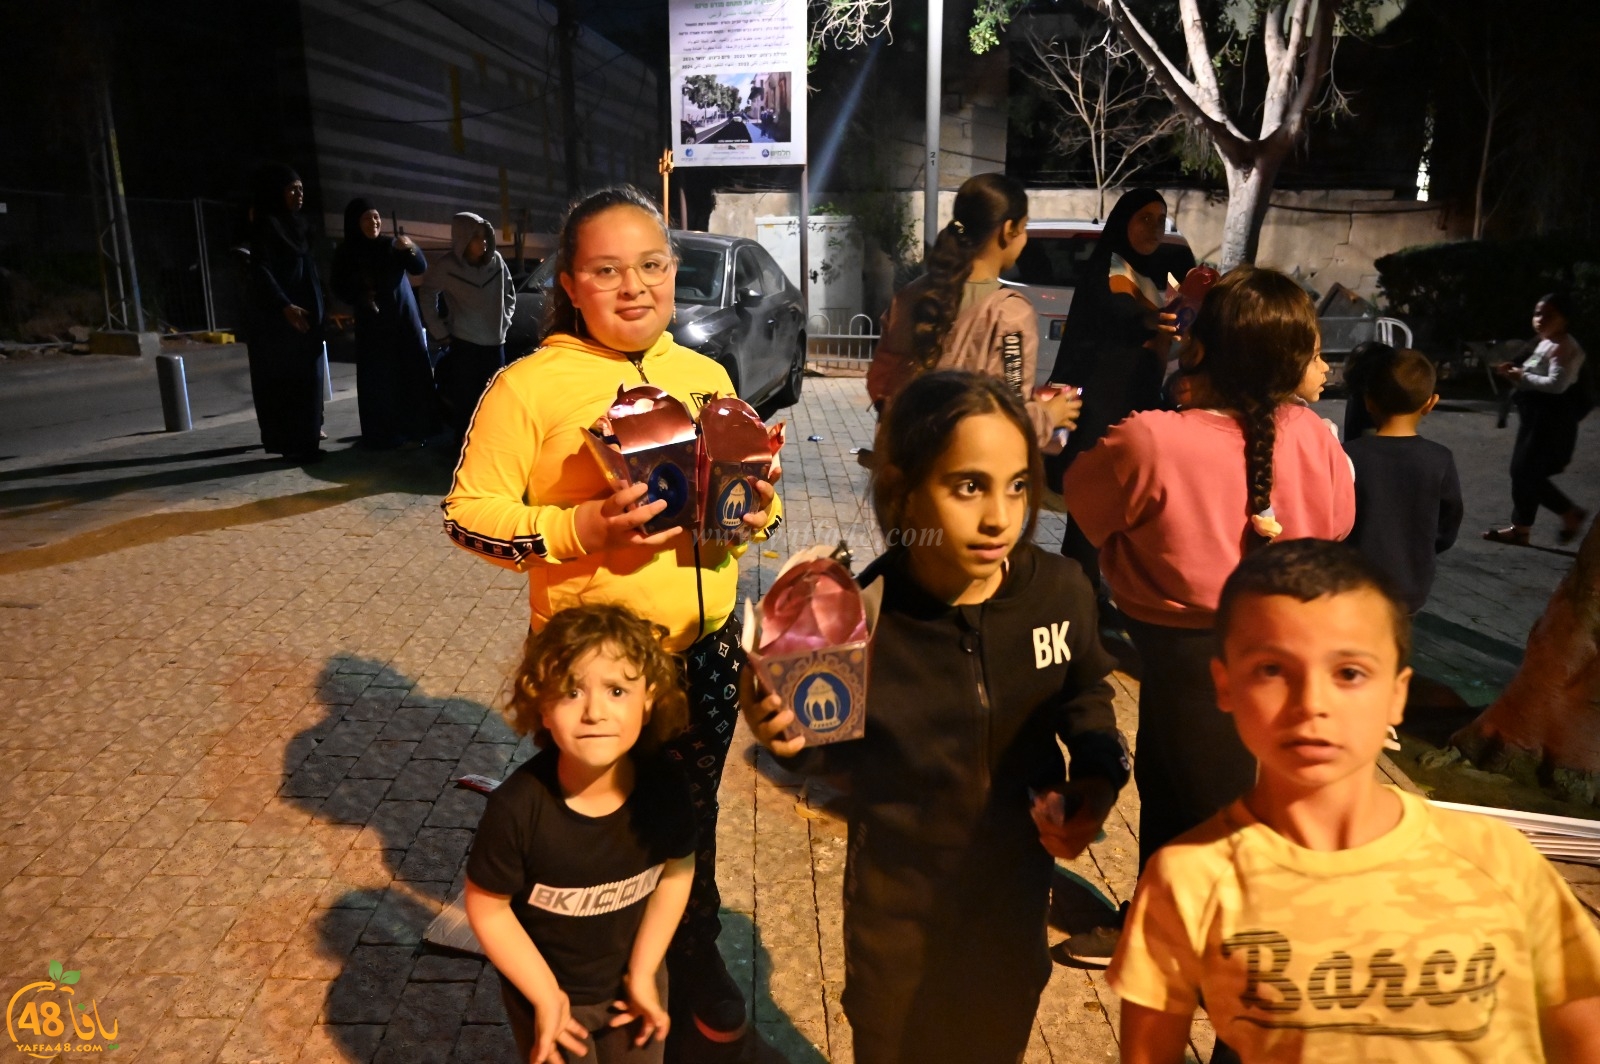  يافا: المئات في مسيرة الانوار وسط مشاركة واسعة لأطفال المدينة